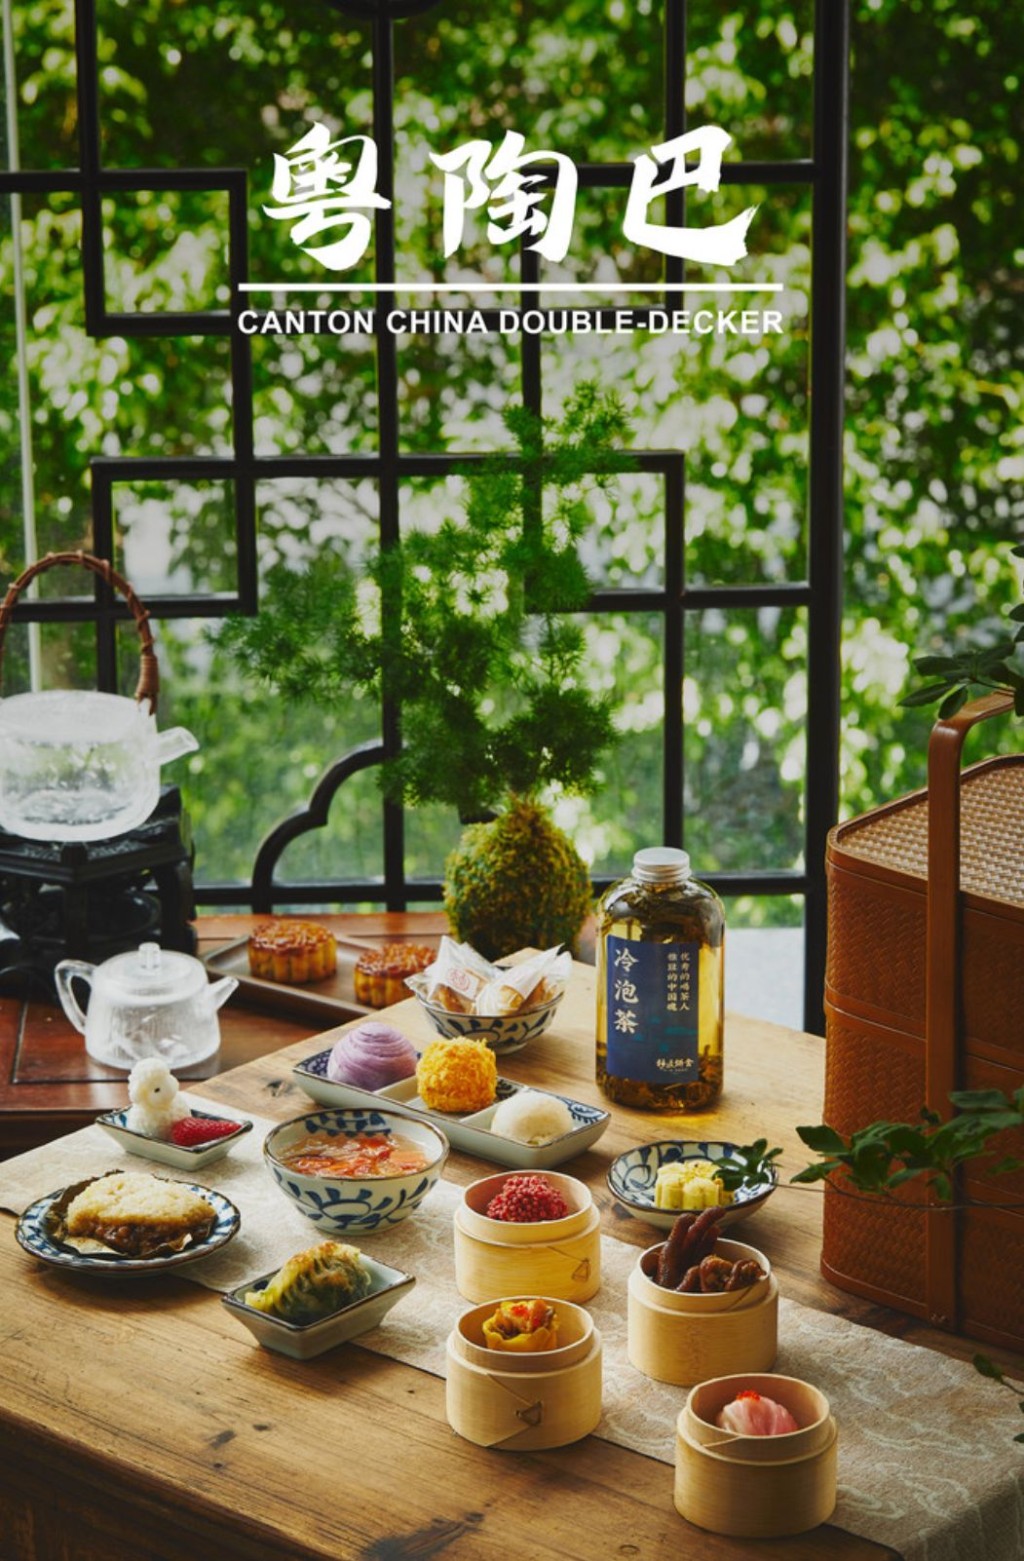 「粤陶巴」由广州市双城观光巴士公司及广州茶楼「陶苑酒家」合作推出。